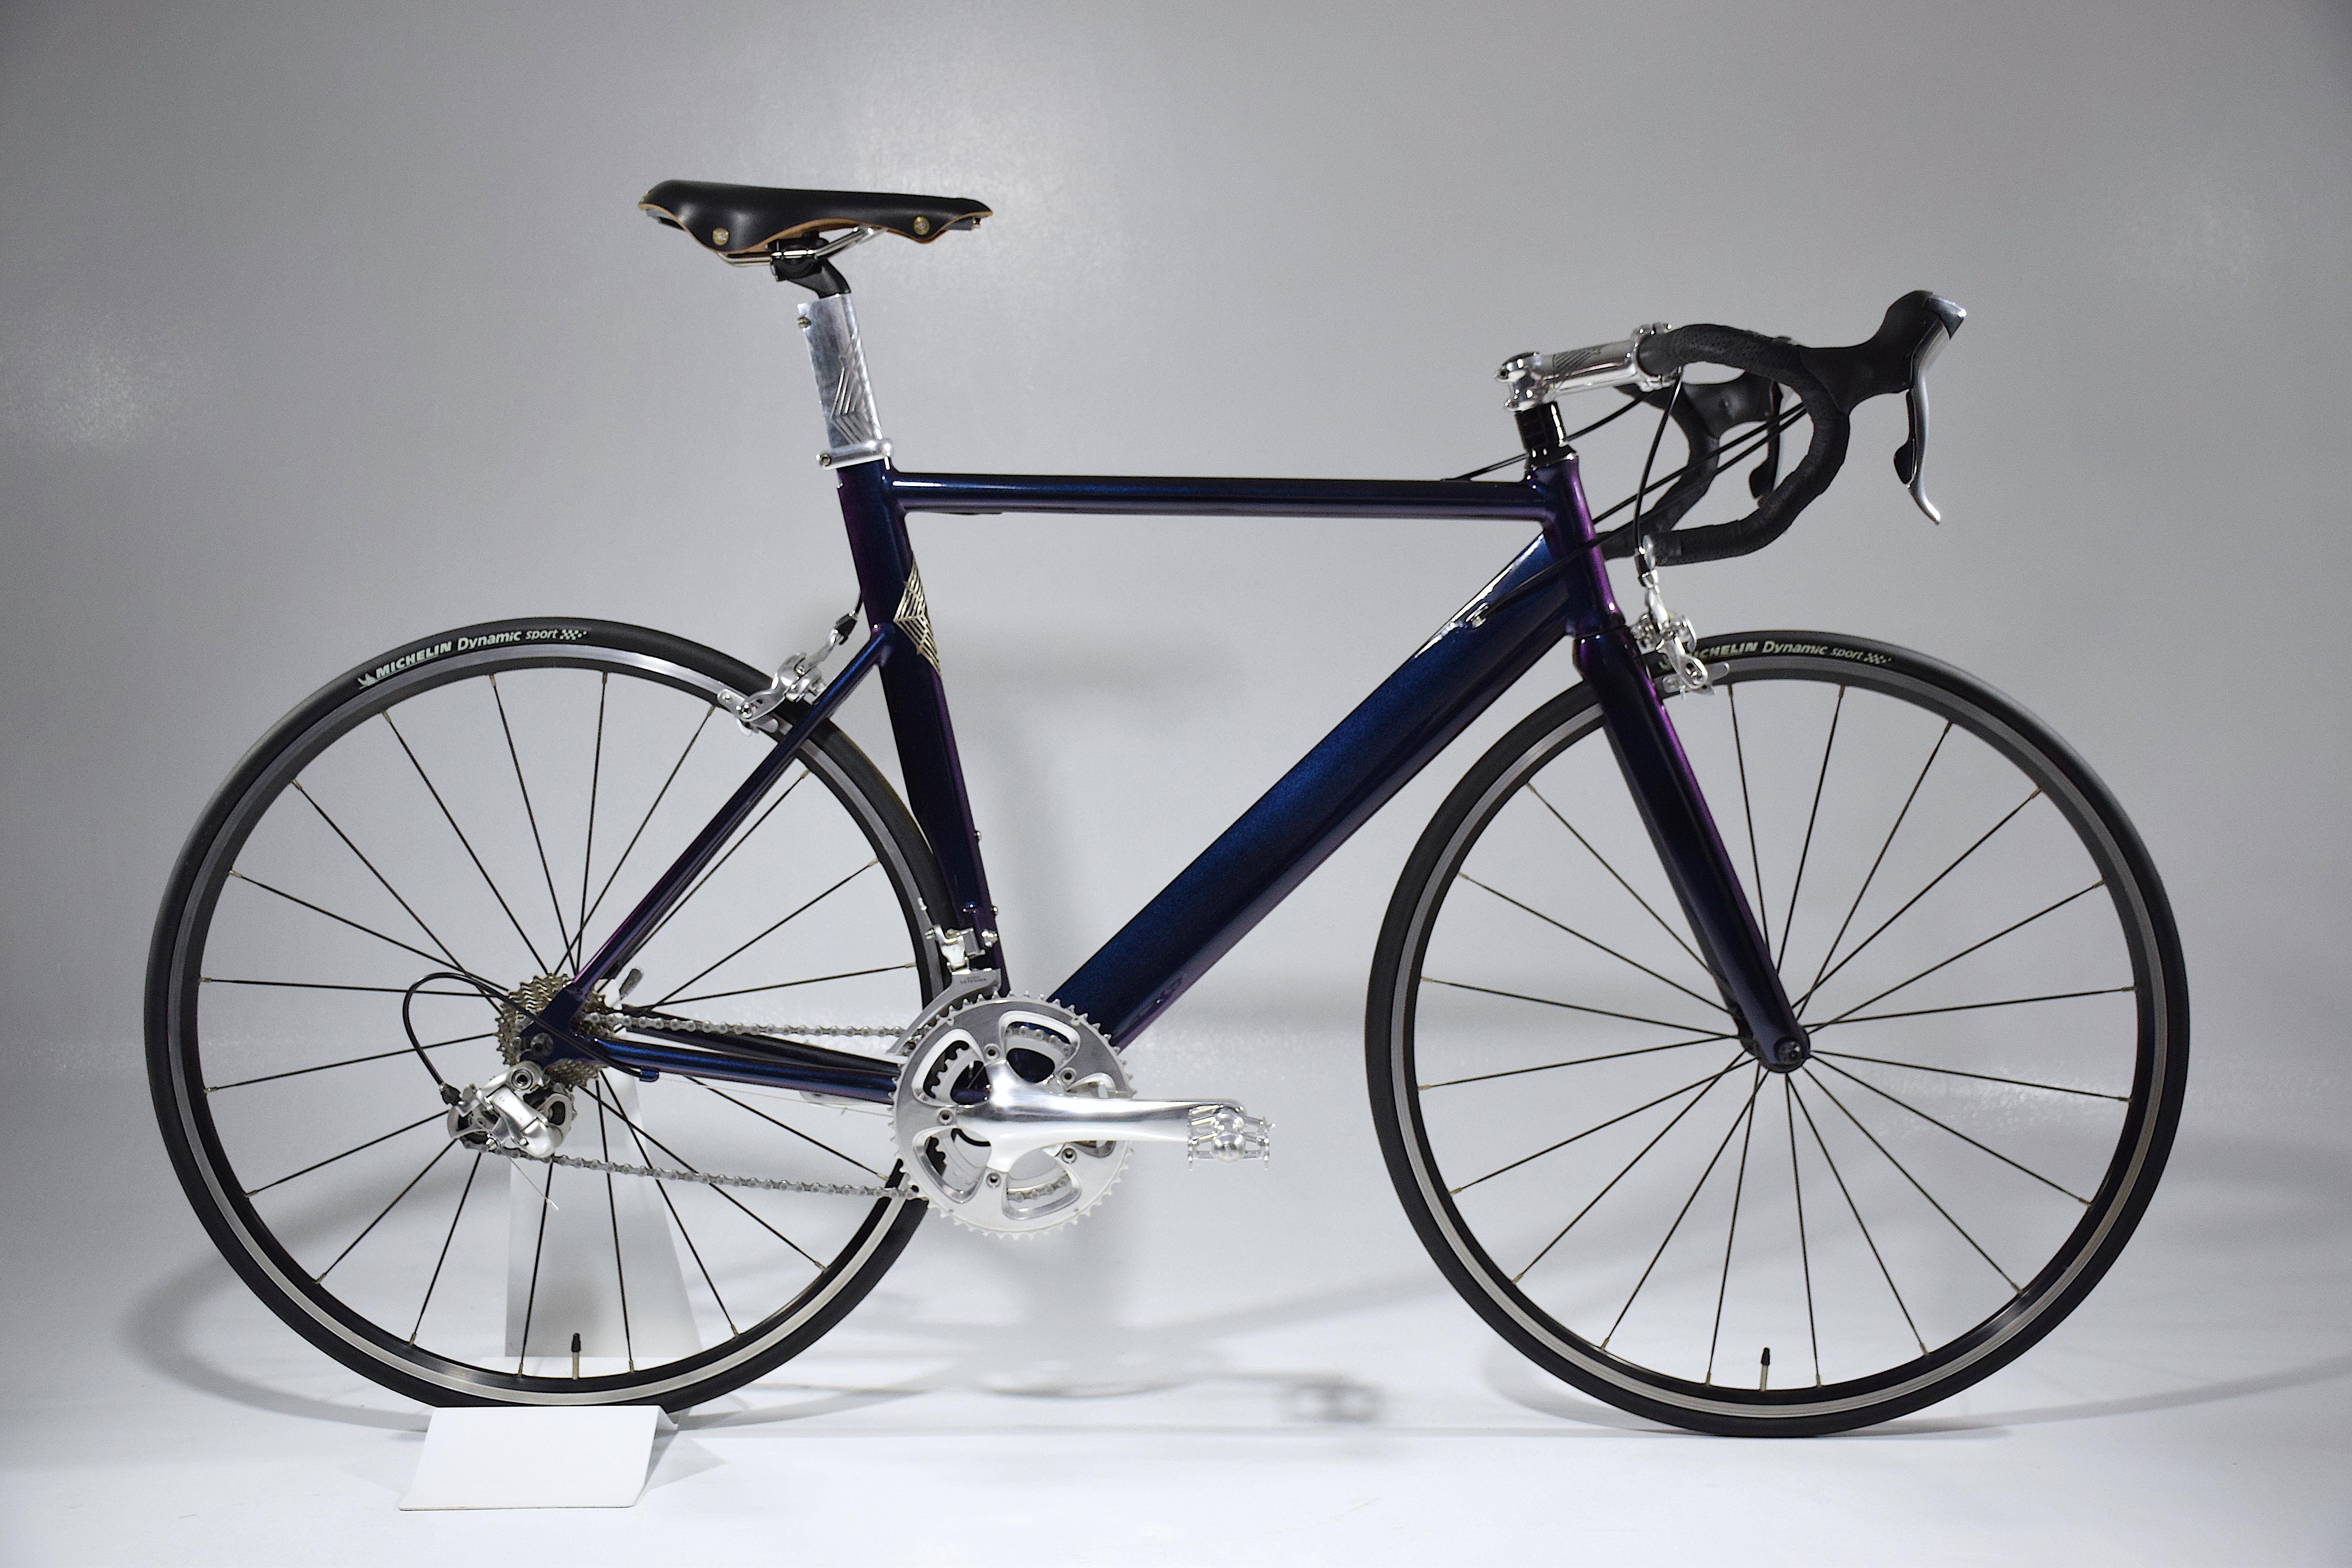 Das Venodi 043 ist ein maßgefertigtes Rennrad mit einem leichten Vintage-Aluminiumrahmen von Cervelo, der mit dem handwerklichen Know-how unseres Studios, neuen Komponenten und hochwertigen Materialien aufbereitet wurde. 
Alle technischen Details